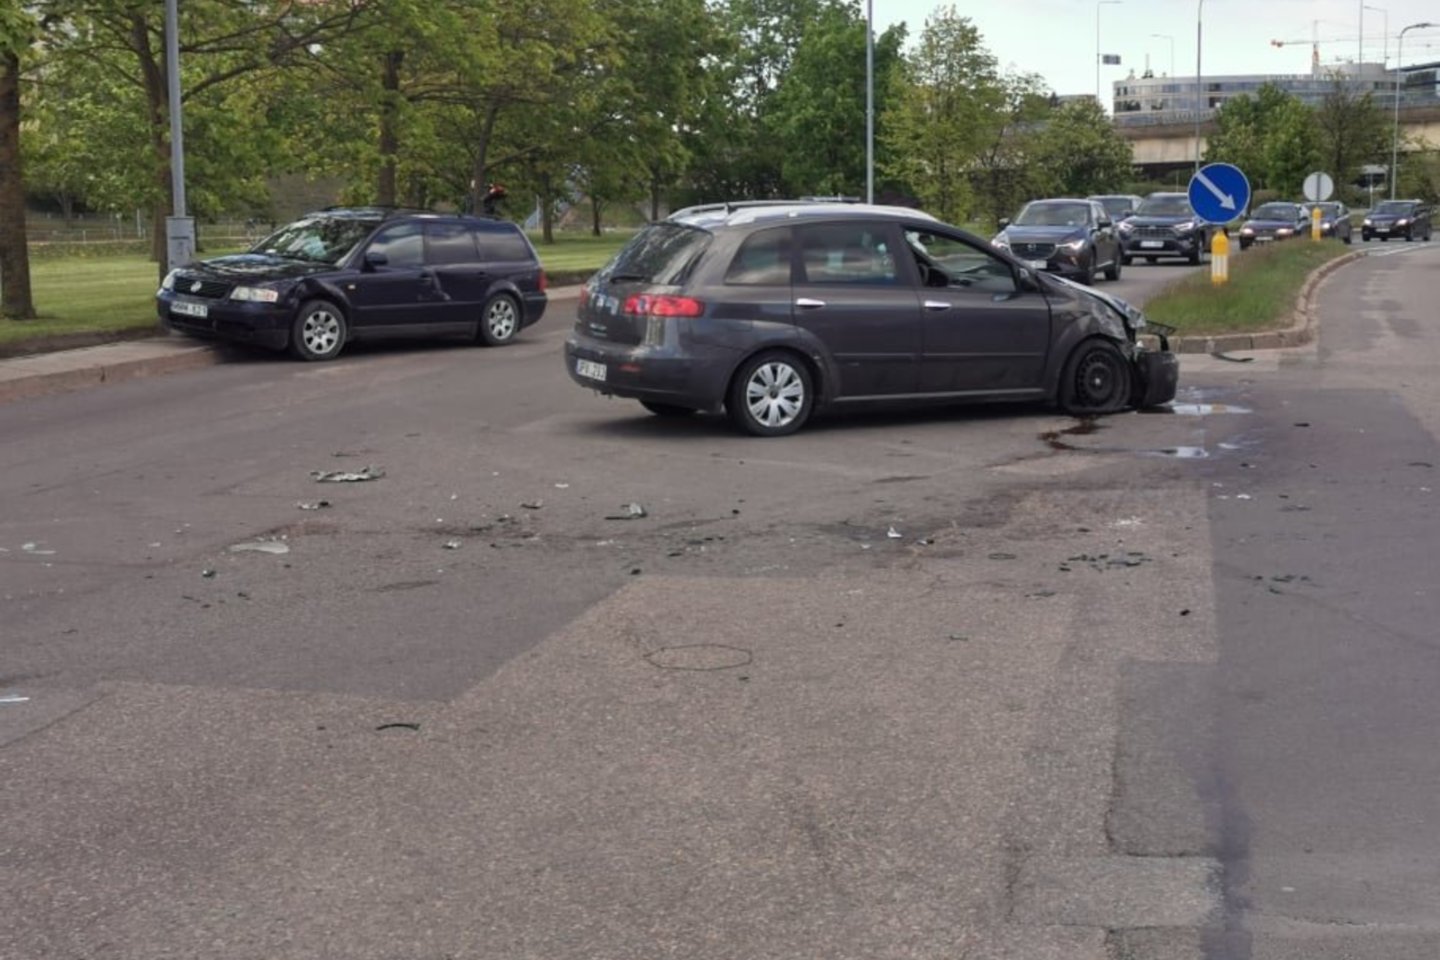  Vilniaus centre girtas vairuotojas sukėlė avariją, per kurią sudaužyti keturi automobiliai - tarp jų ir prabangus „Maserati“.<br> T.Bauro nuotr.